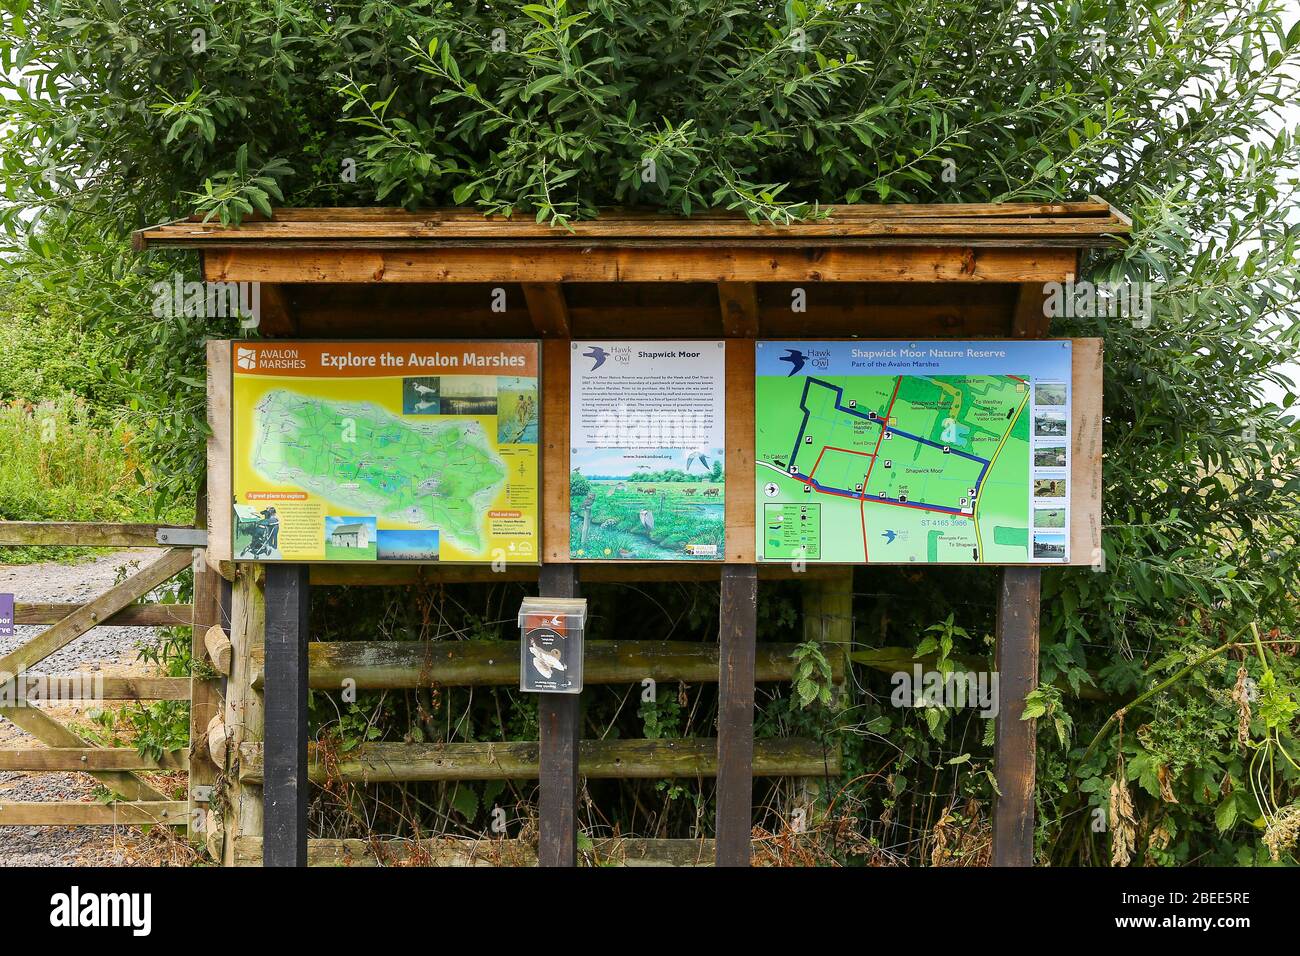 Un conseil d'information de la réserve naturelle Shapwick Moor, qui fait partie des Avalon Marshes, Somerset, Angleterre, Royaume-Uni Banque D'Images